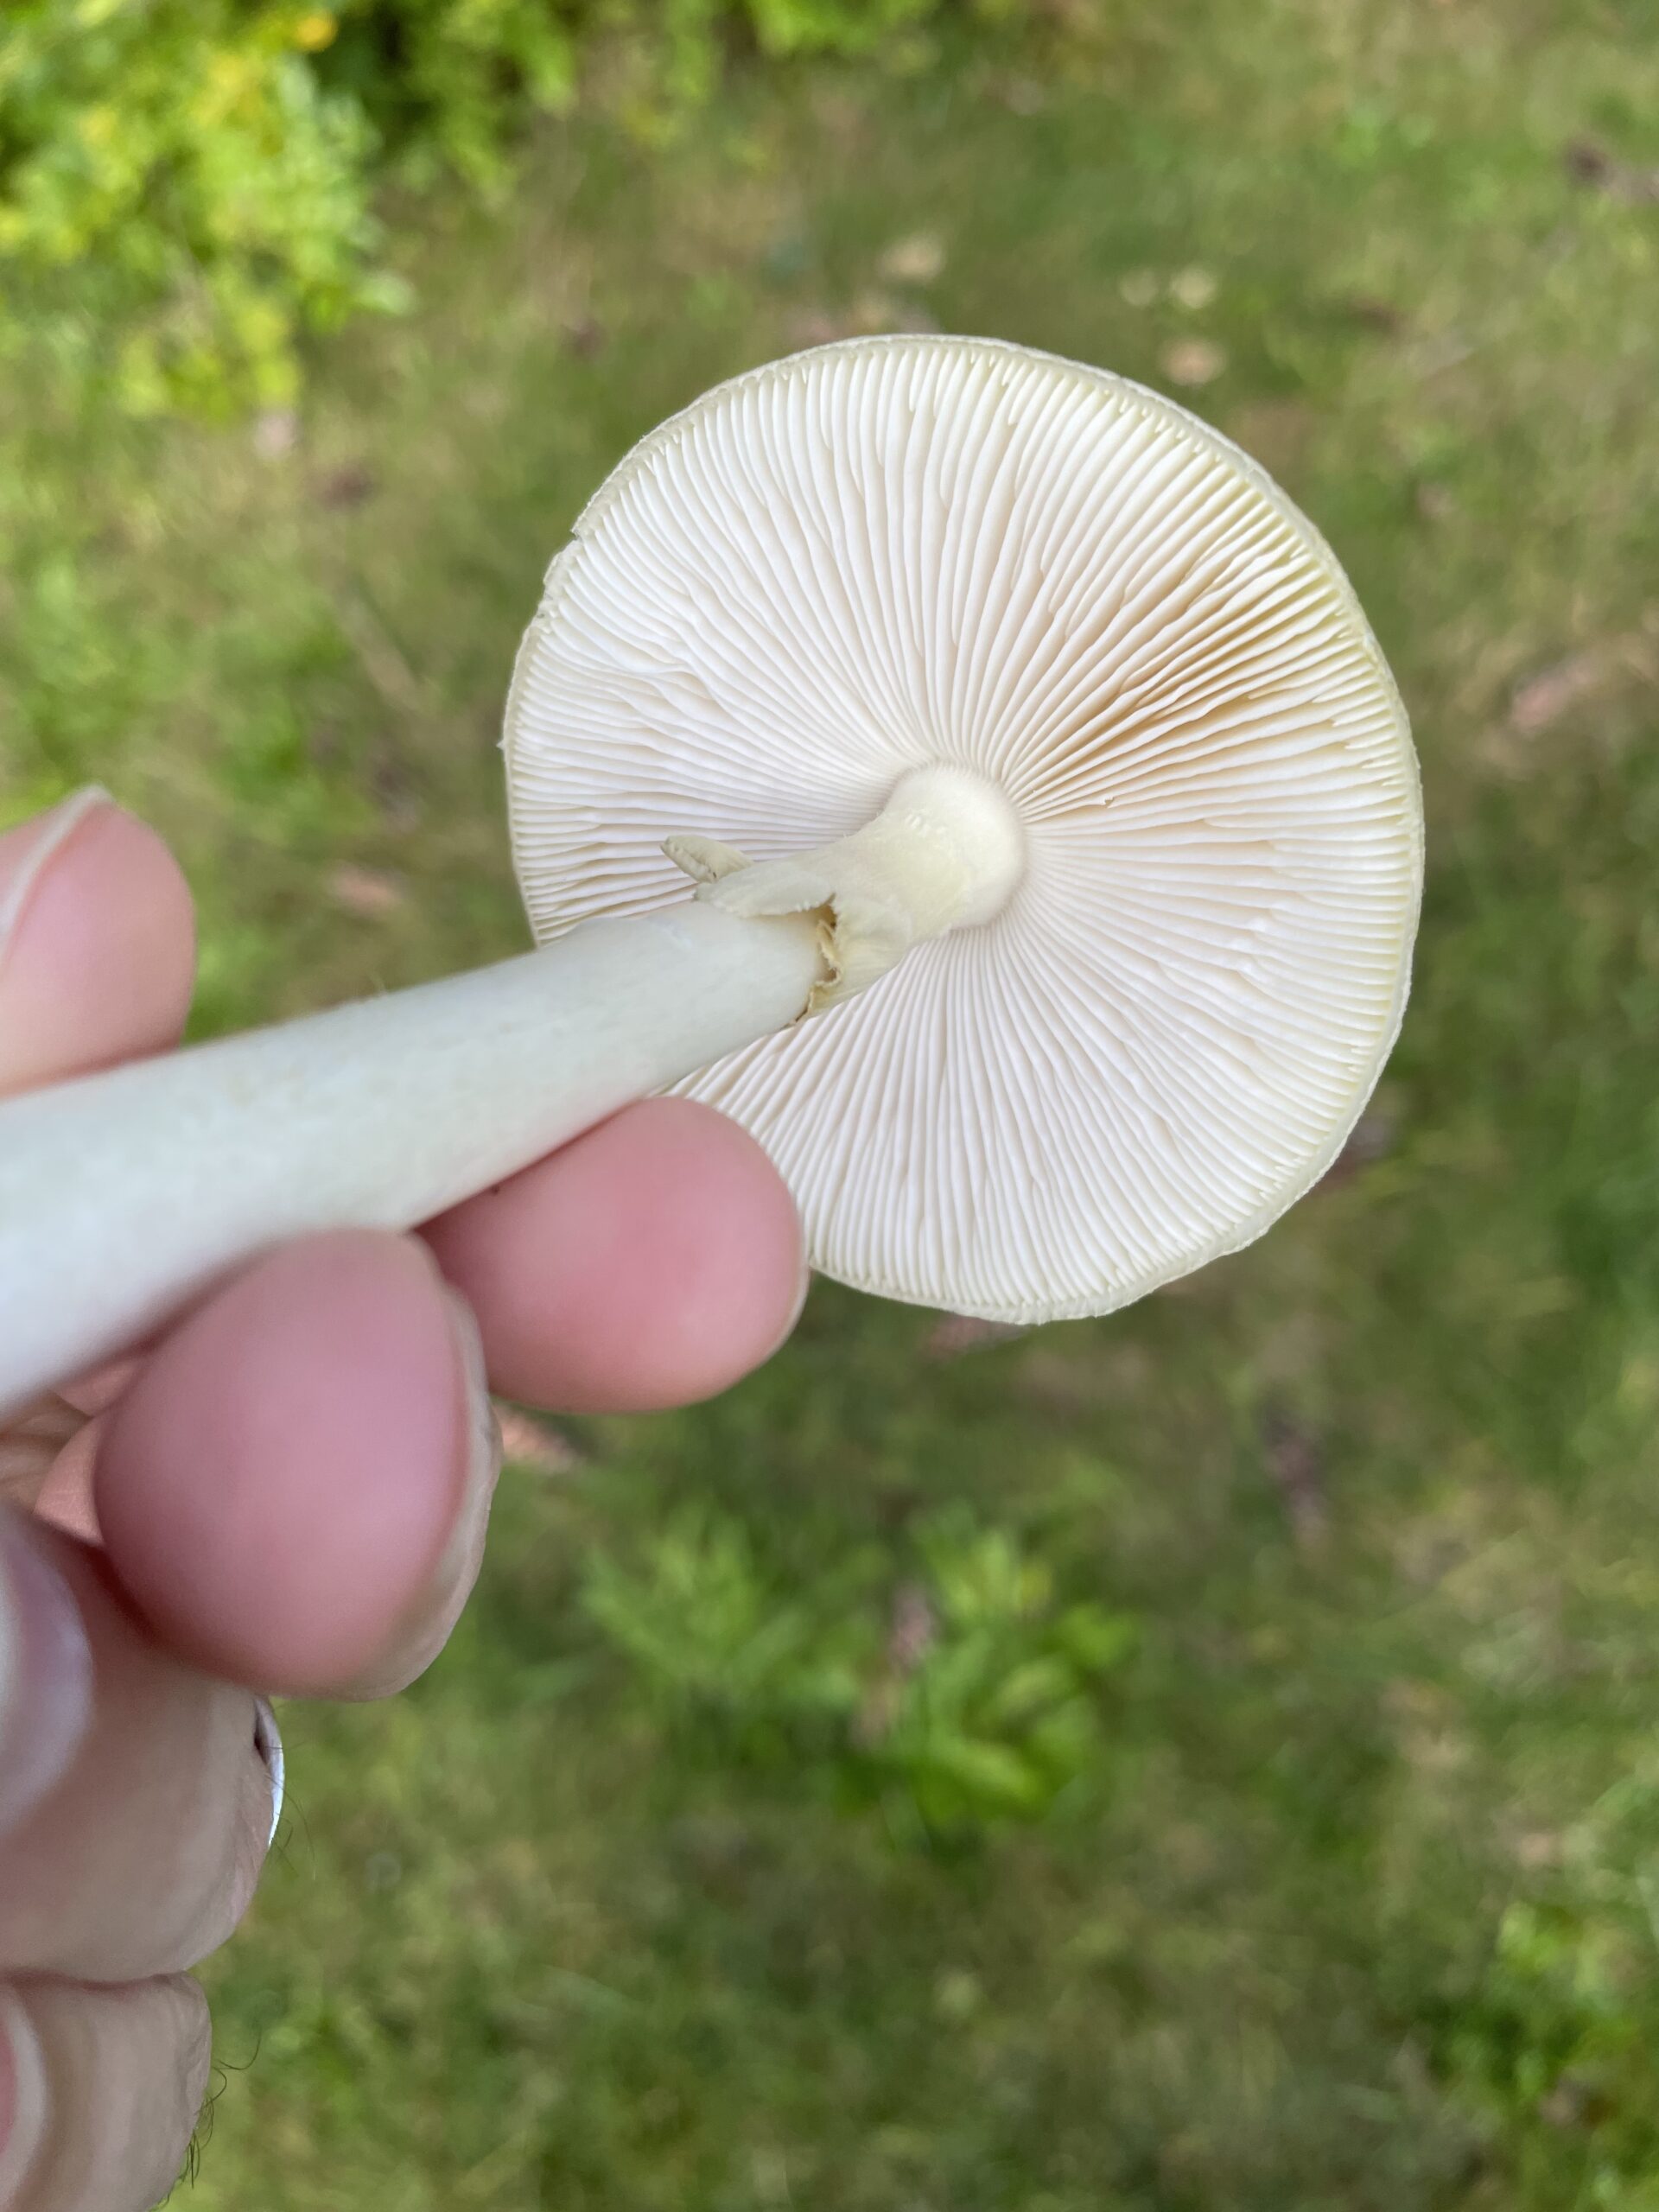 a death cap mushroom